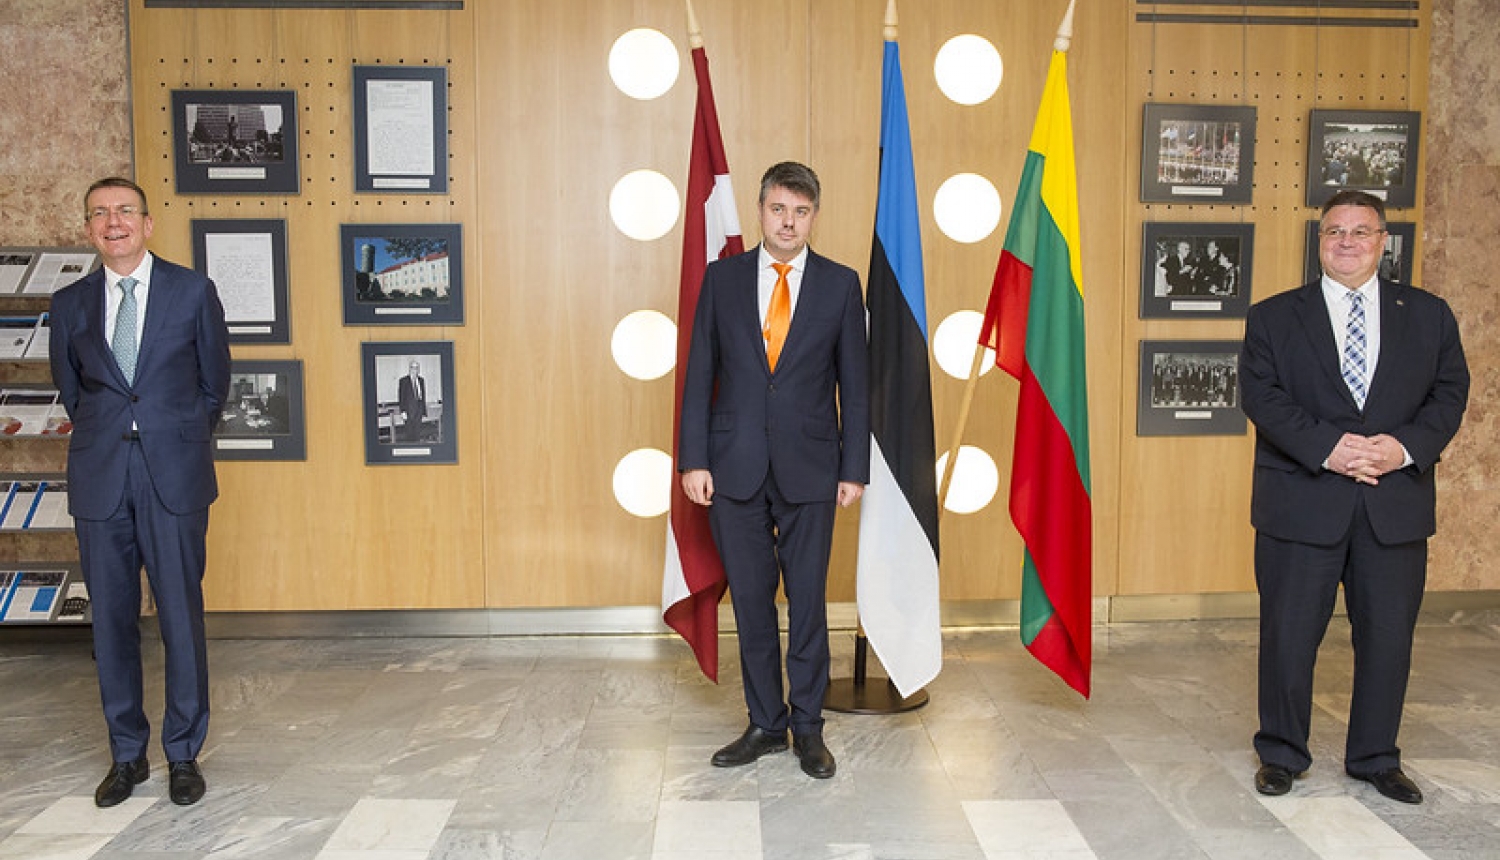 Ārlietu ministrs uzsver Baltijas valstu ciešo sadarbību cīņā pret Covid-19 pandēmiju